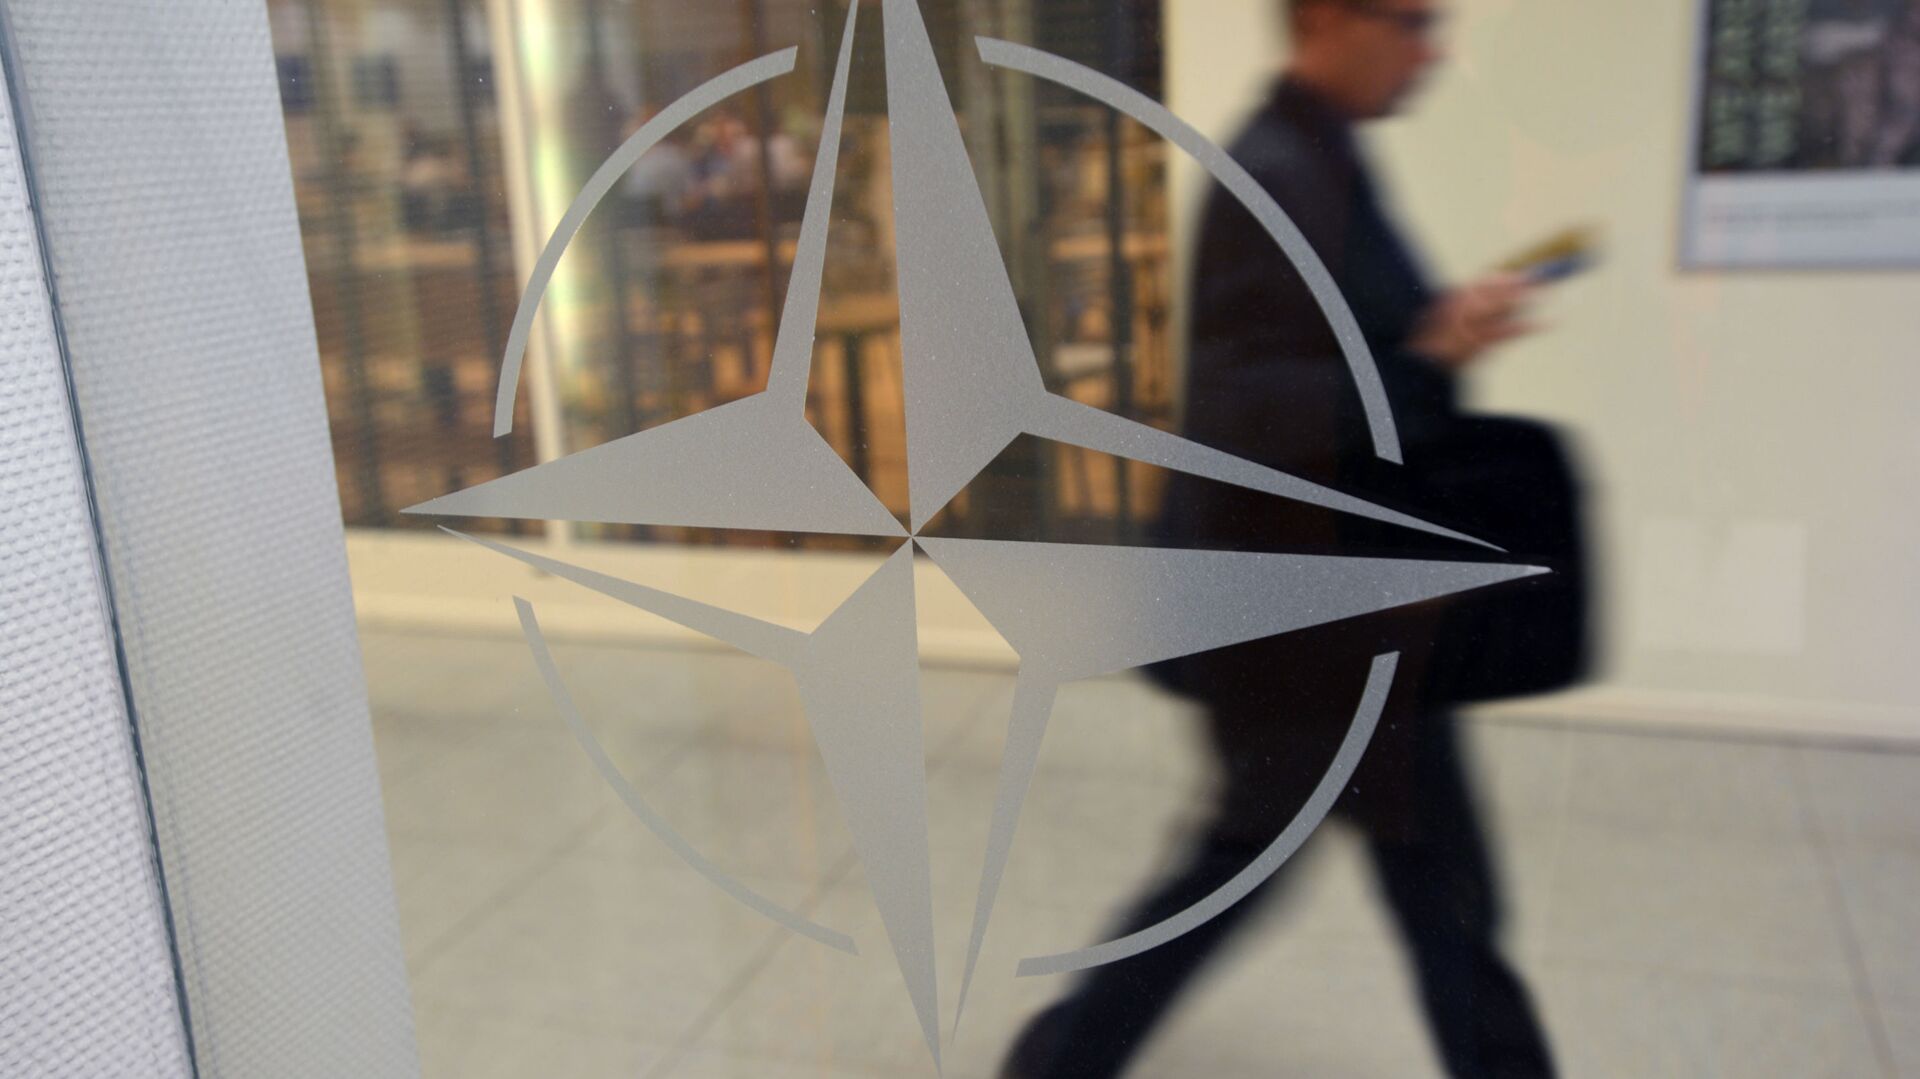 Эмблема организации в штаб-квартире НАТО в Брюсселе. - Sputnik Беларусь, 1920, 10.12.2021